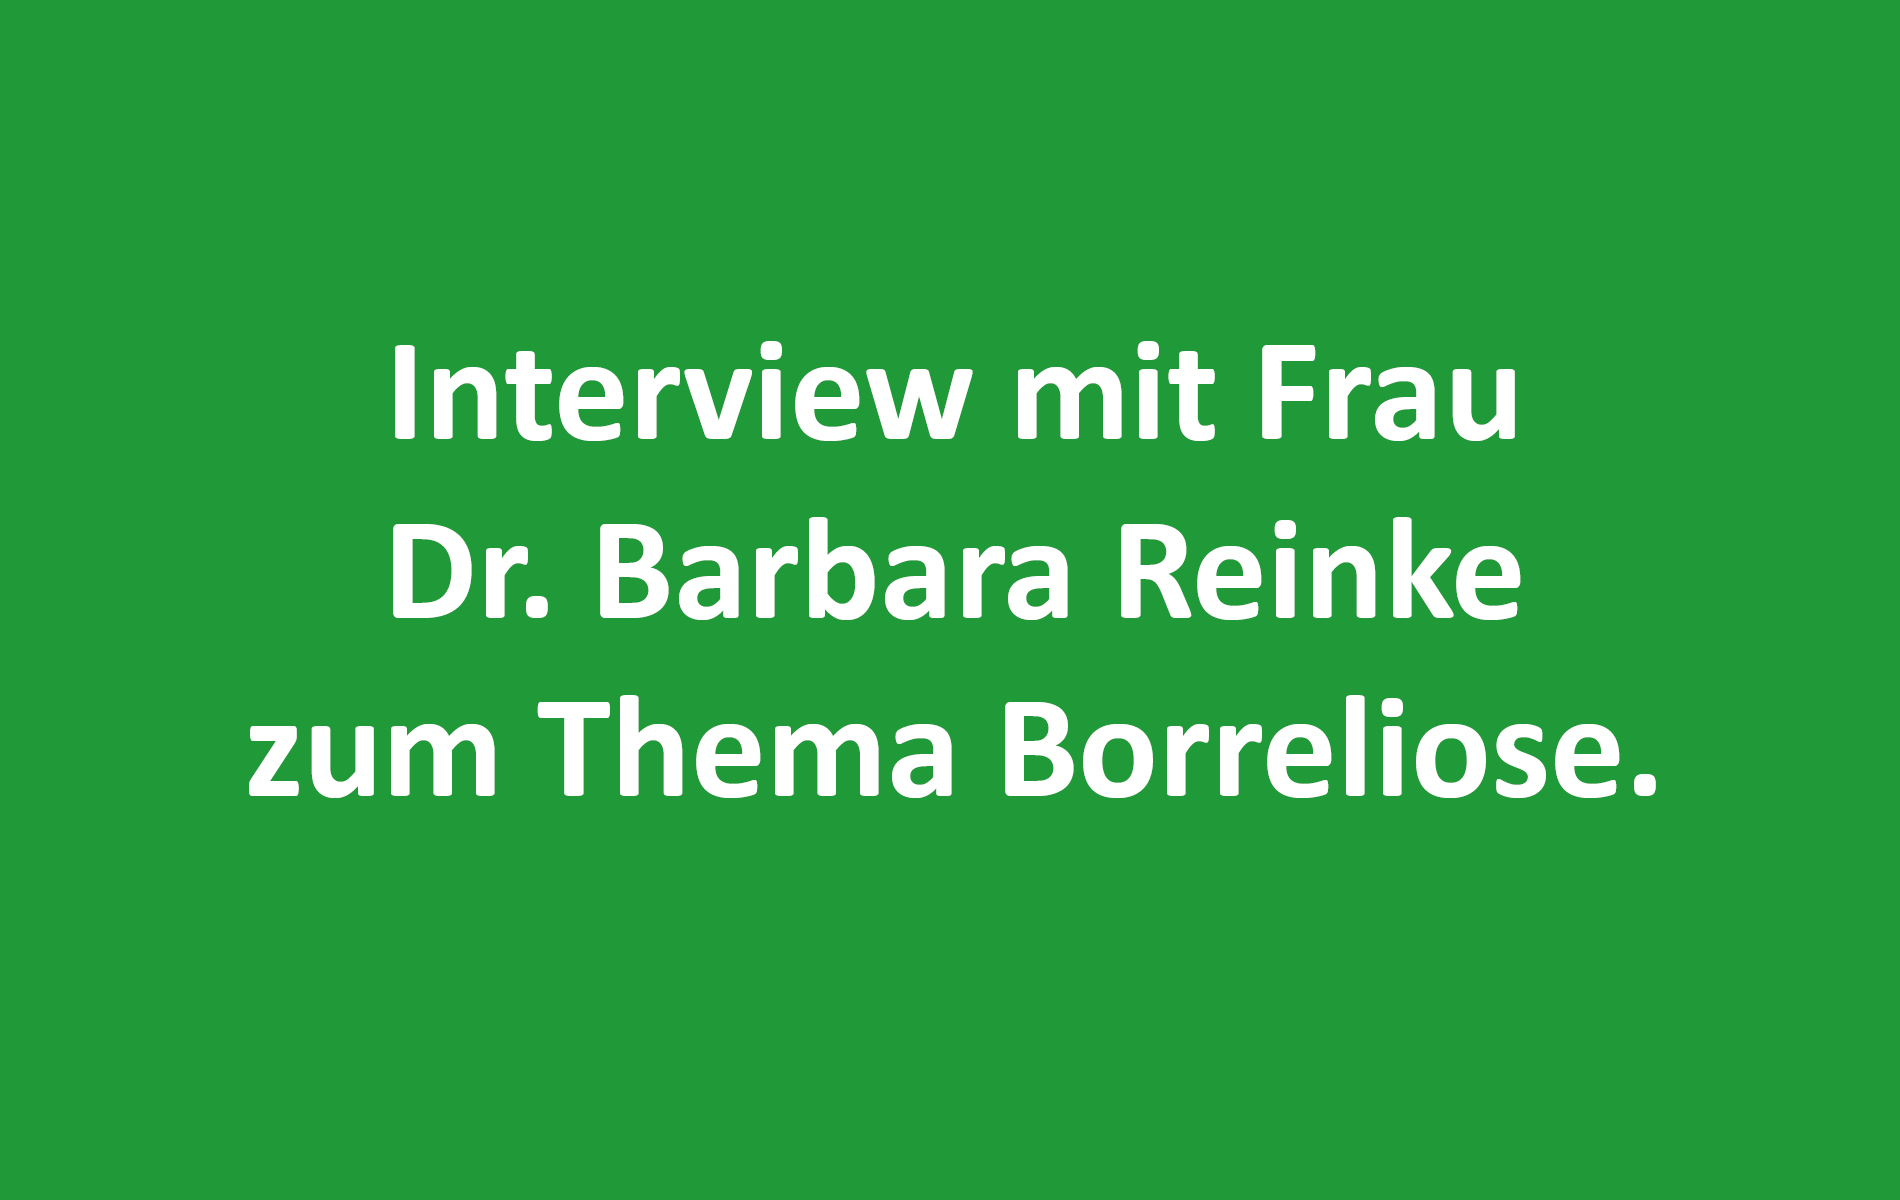 Interview mit Frau Dr. Barbara Reinke zum Thema Borreliose